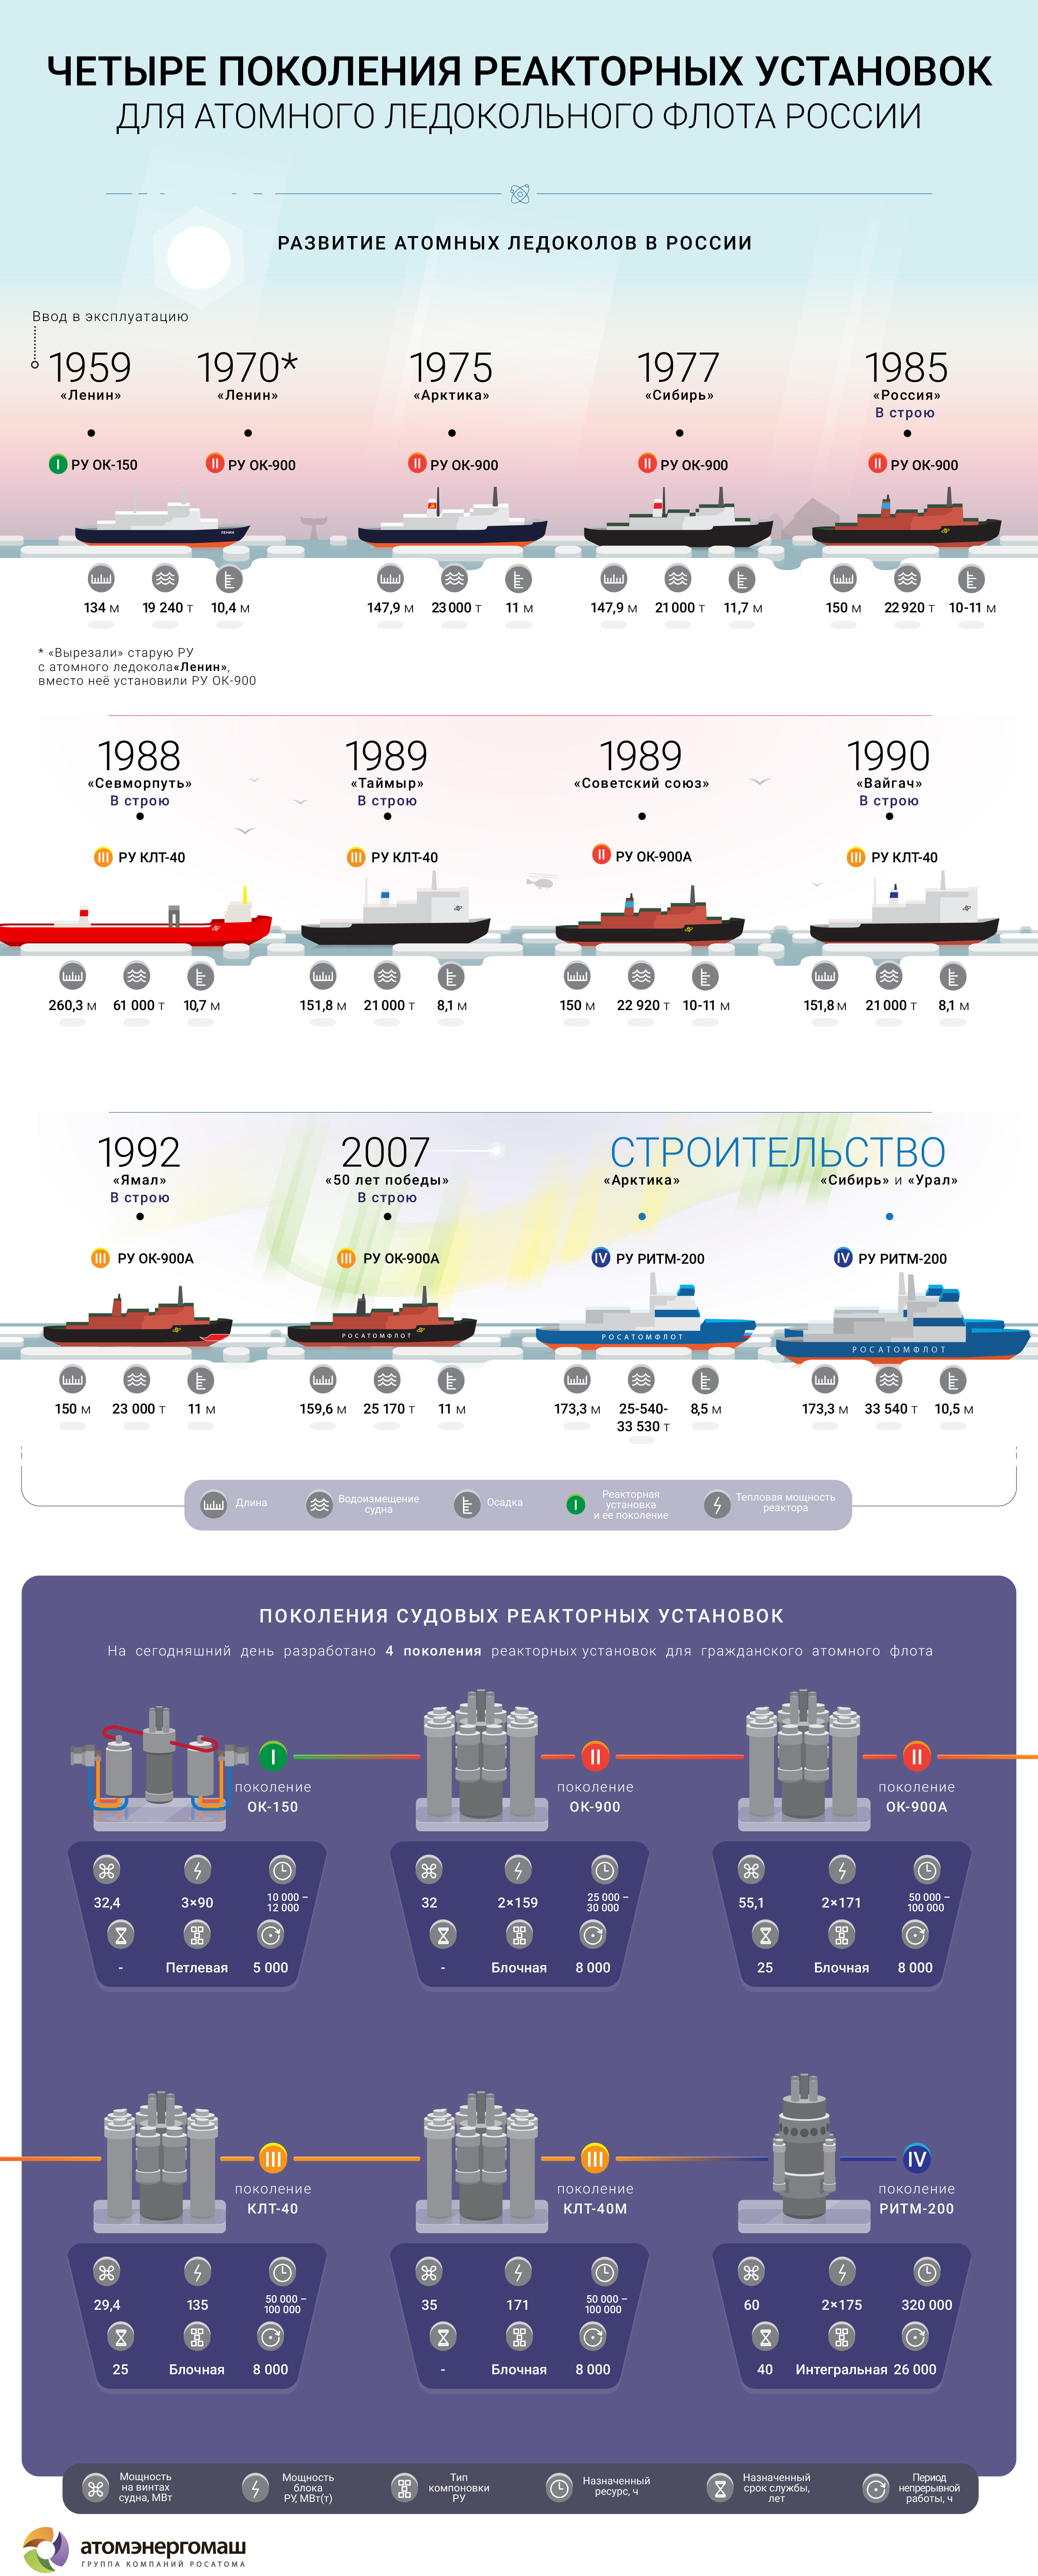 Четыре поколения реакторных установок для атомных ледоколов России